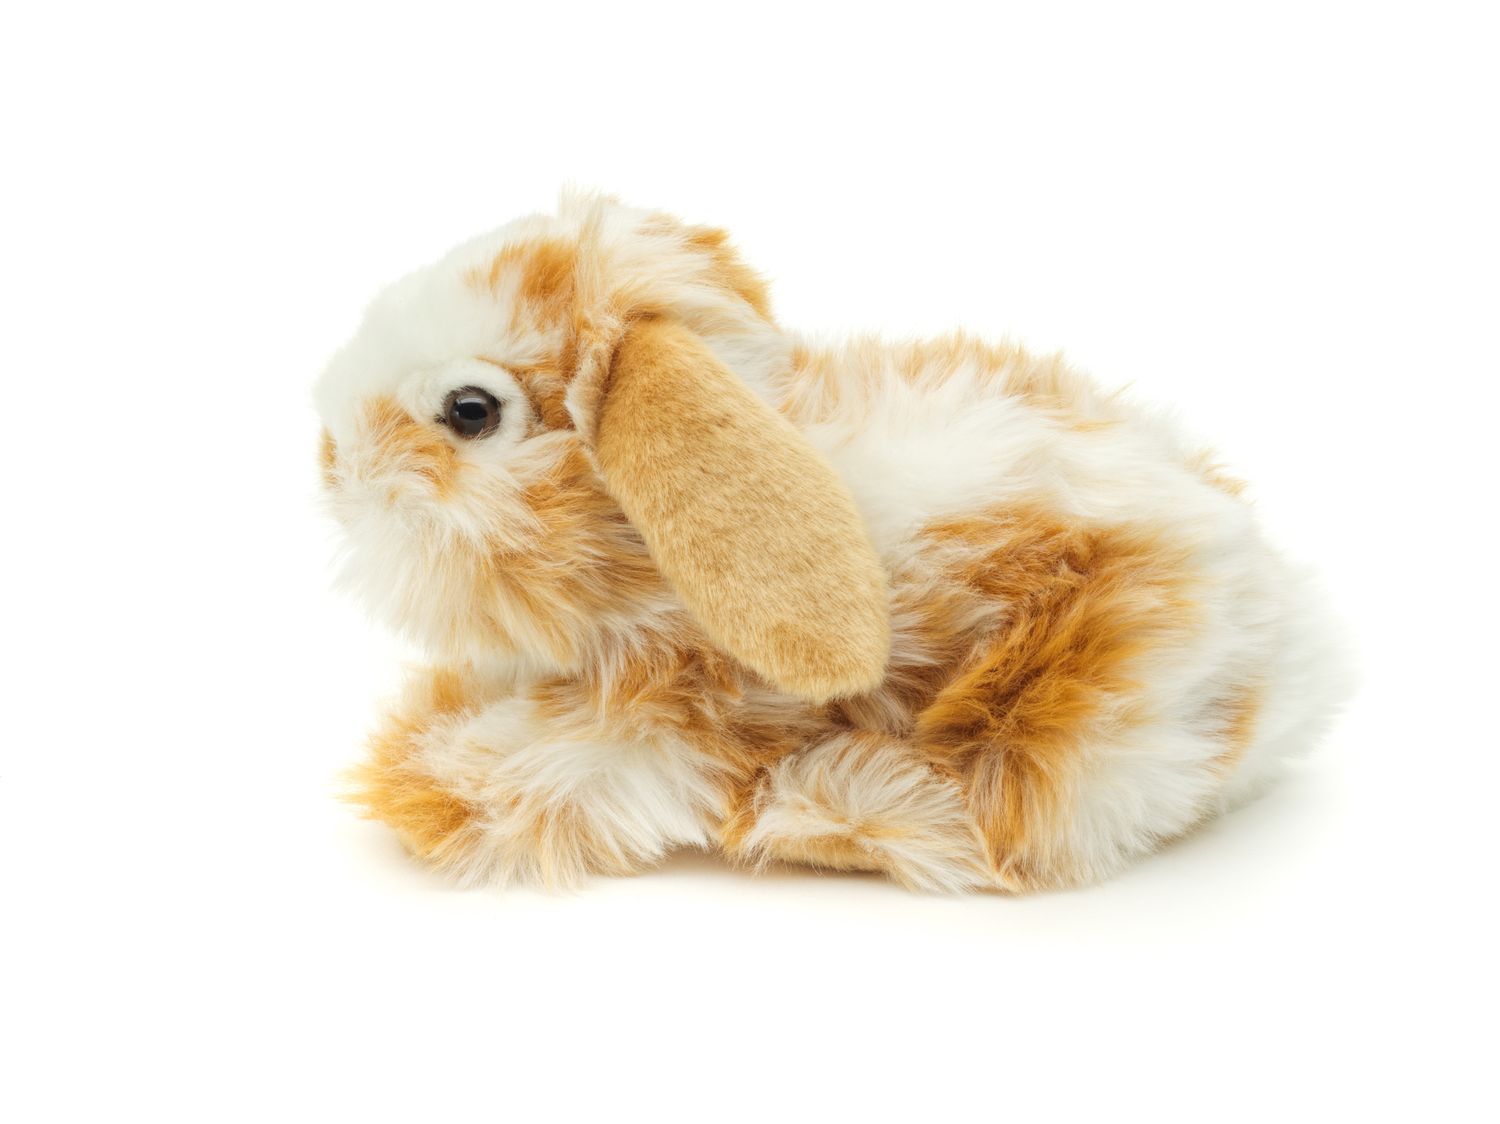  Löwenkopf-Kaninchen mit hängenden Ohren - liegend - Gold-weiß gescheckt - 23 cm (Länge) - Plüsch-Hase - Plüschtier, Kuscheltier